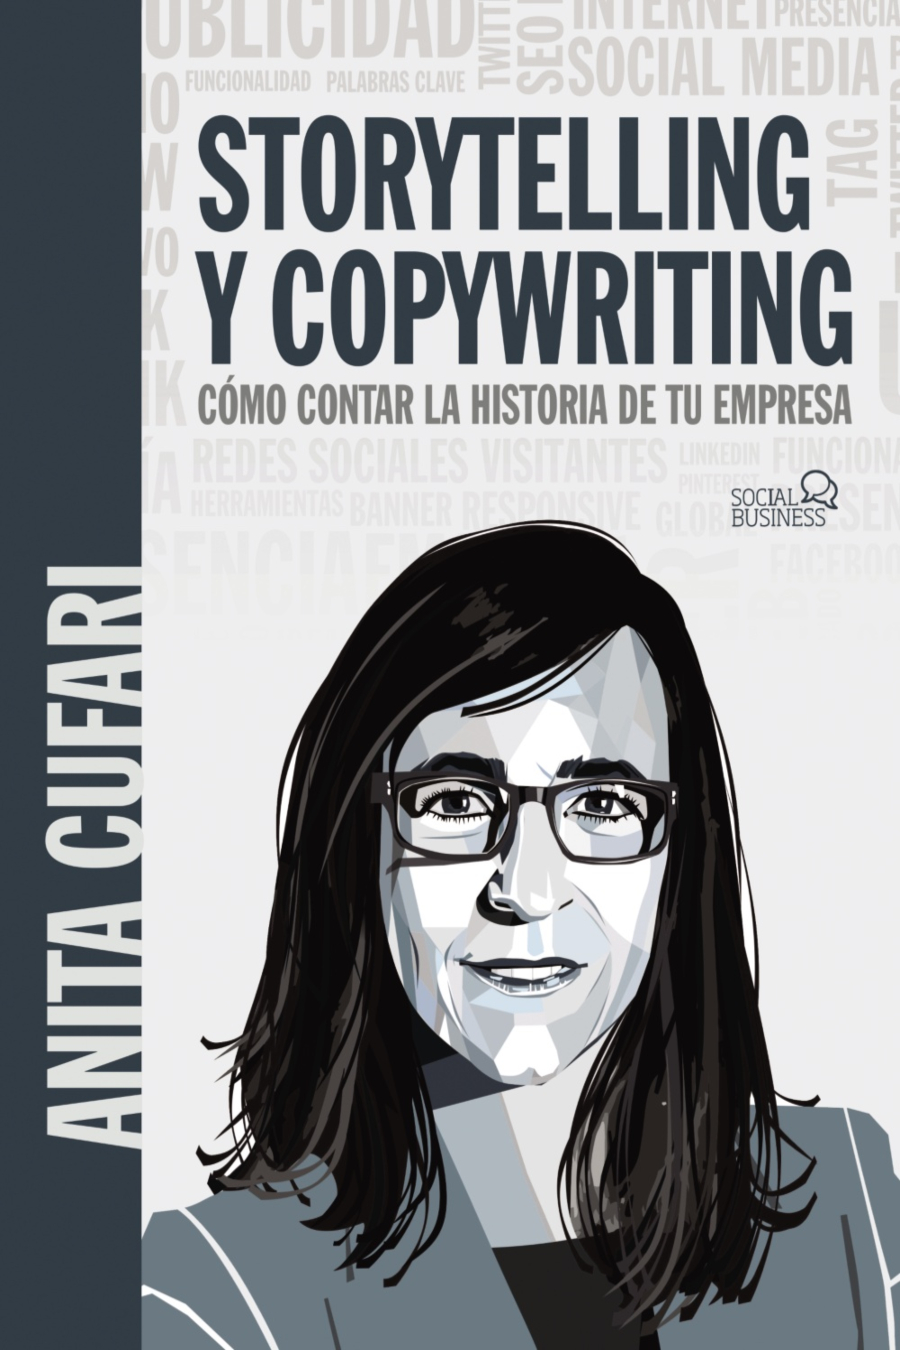 Anita Cufari. Storytelling y copywriting. Cómo contar la historia de tu empresa